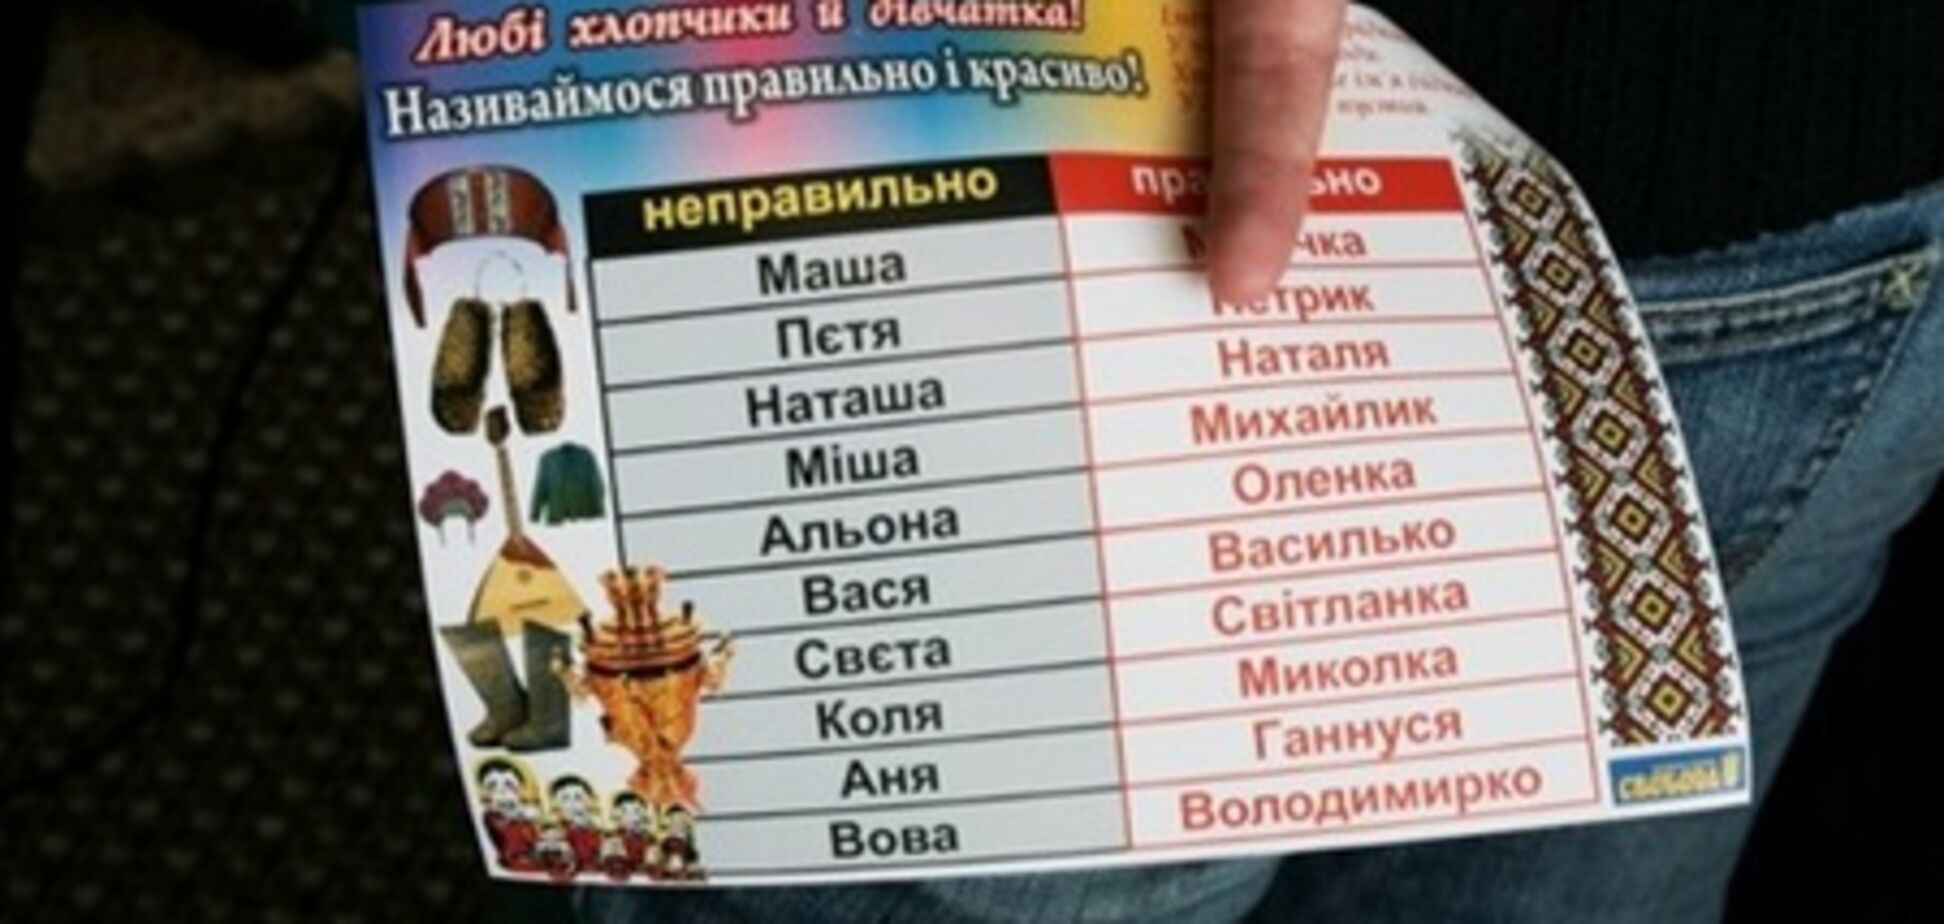 Фарион составила список 'неправильных' русских имен